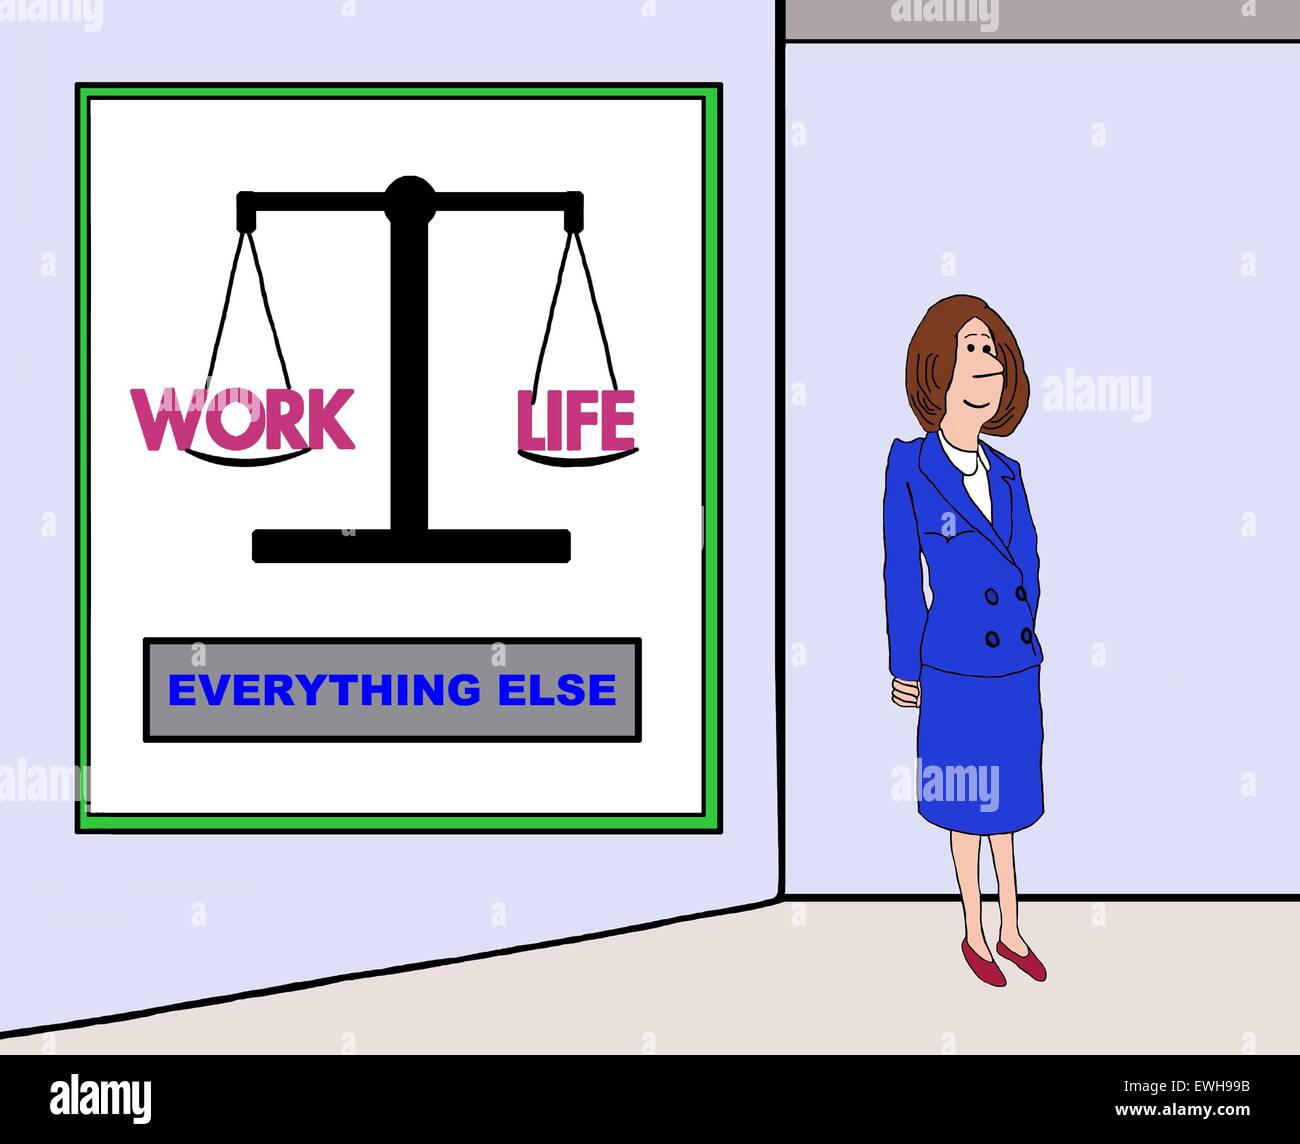 Business-Cartoon von Geschäftsfrau steht vor einem Diagramm, das zeigt "Arbeit" "Leben" Gleichgewicht auf einer Skala und "alles andere". Stockfoto